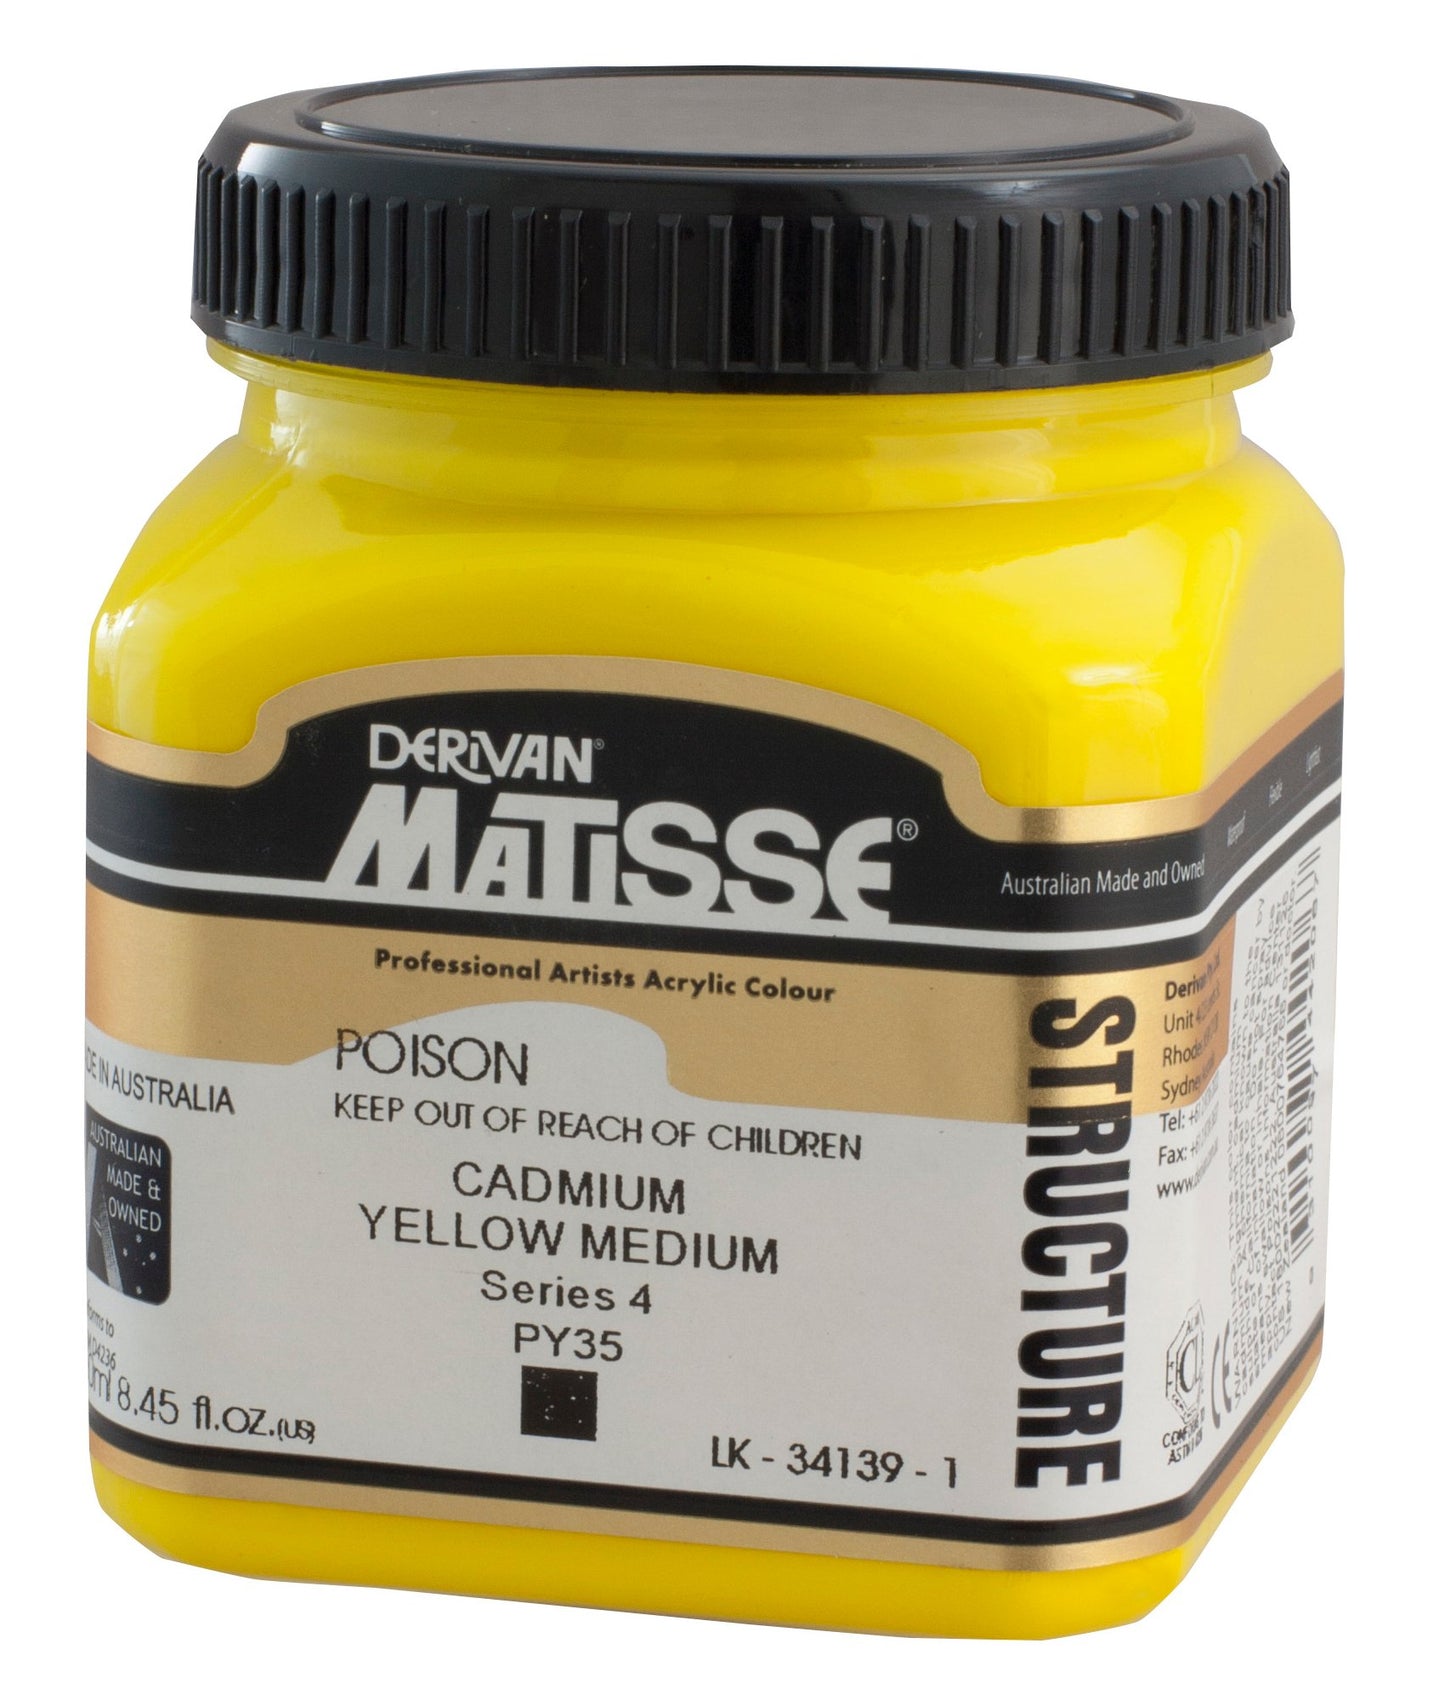 Derivan Matisse, Structure, Cadmium Yellow Medium